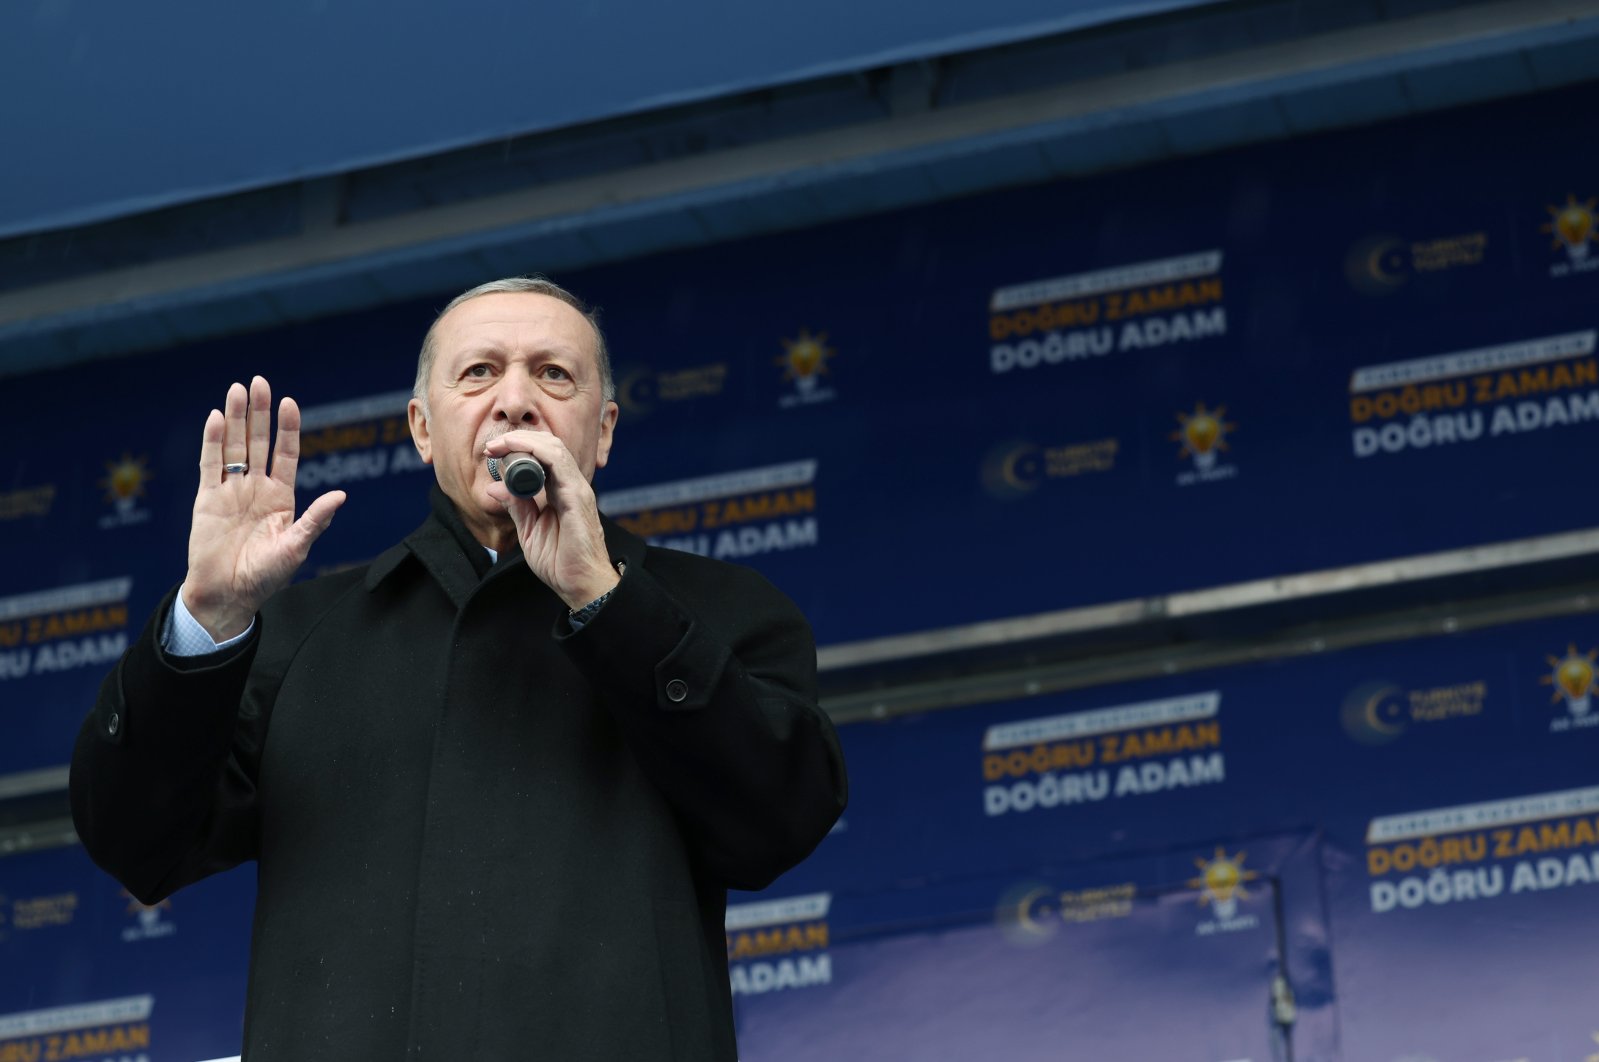 Tidak ada jalan mundur dari kebijakan berbasis tarif rendah setelah pemungutan suara: Erdogan